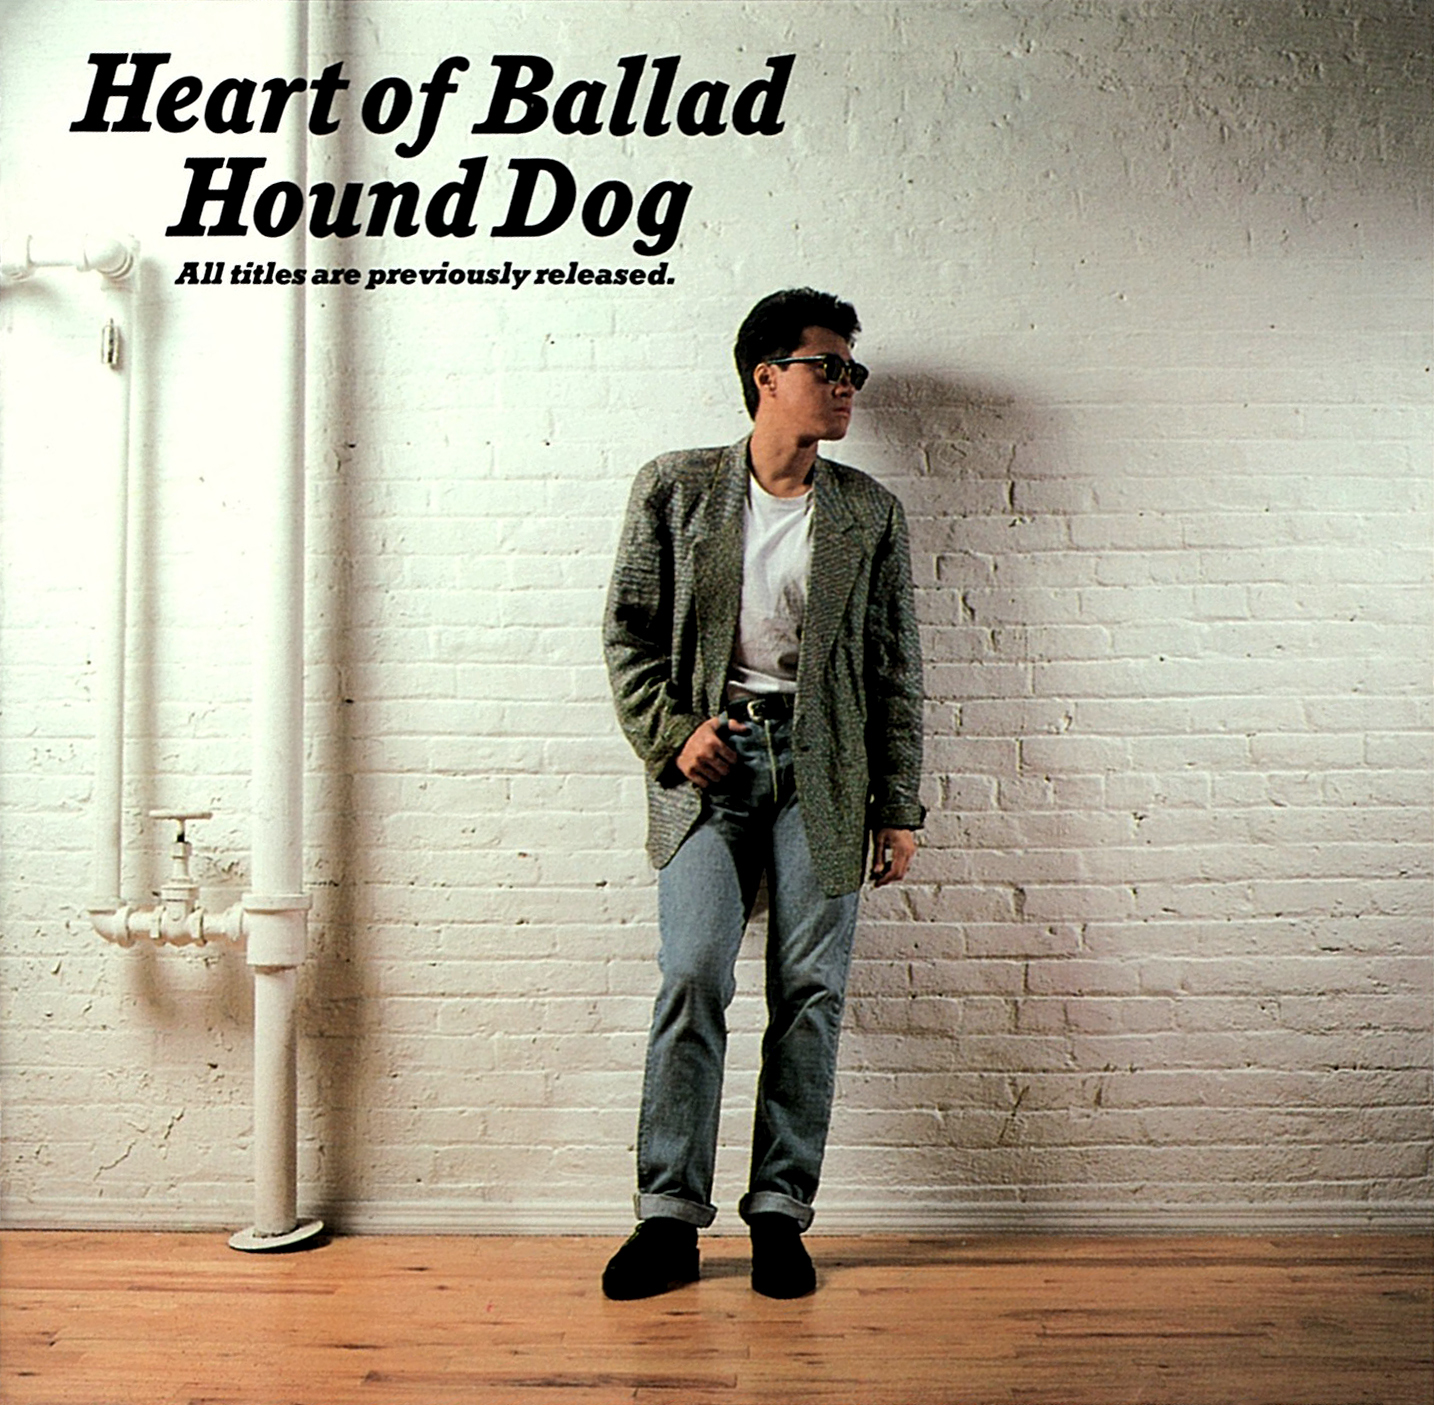 ハウンド・ドッグ (Hound Dog) ベスト・アルバム『Heart of Ballad (ハート・オブ・バラッド)』(1988年12月1日発売) 高画質CDジャケット画像